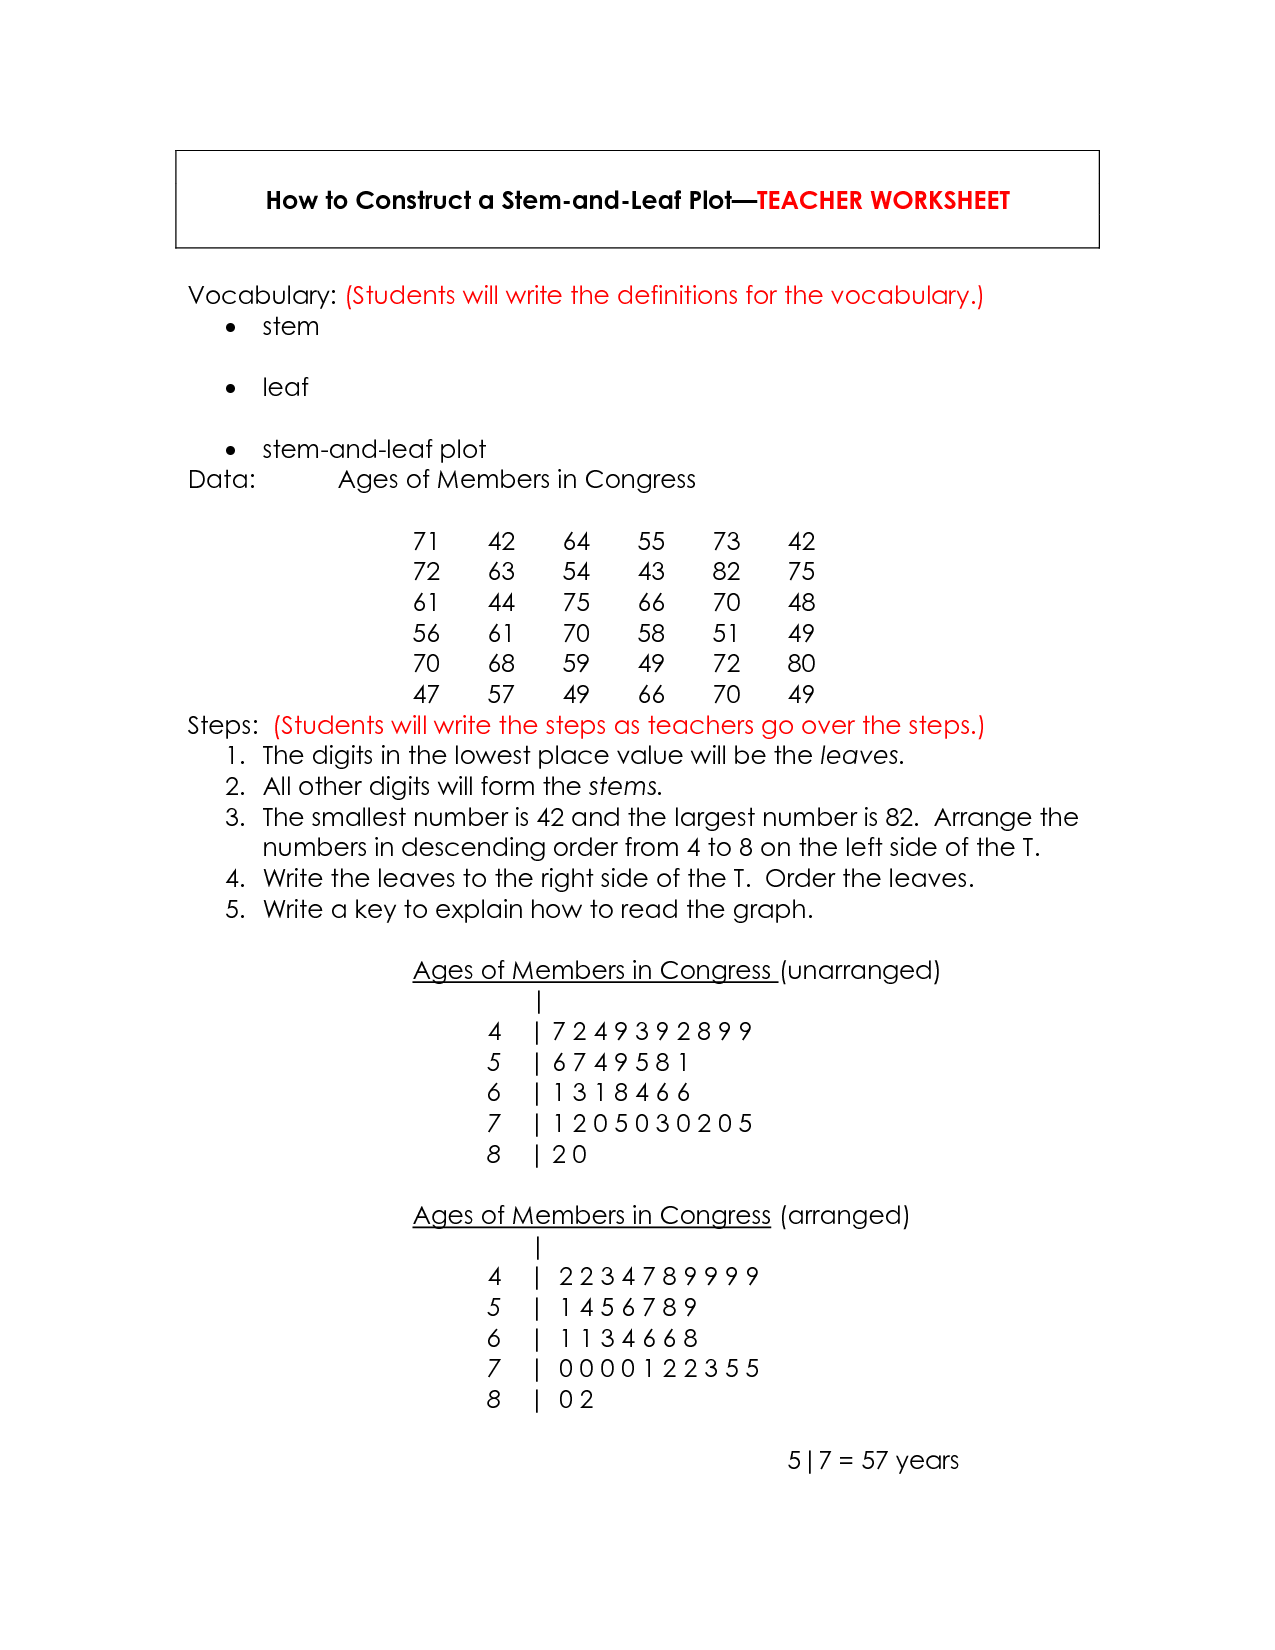 Stem and Leaf Plot Worksheets Image